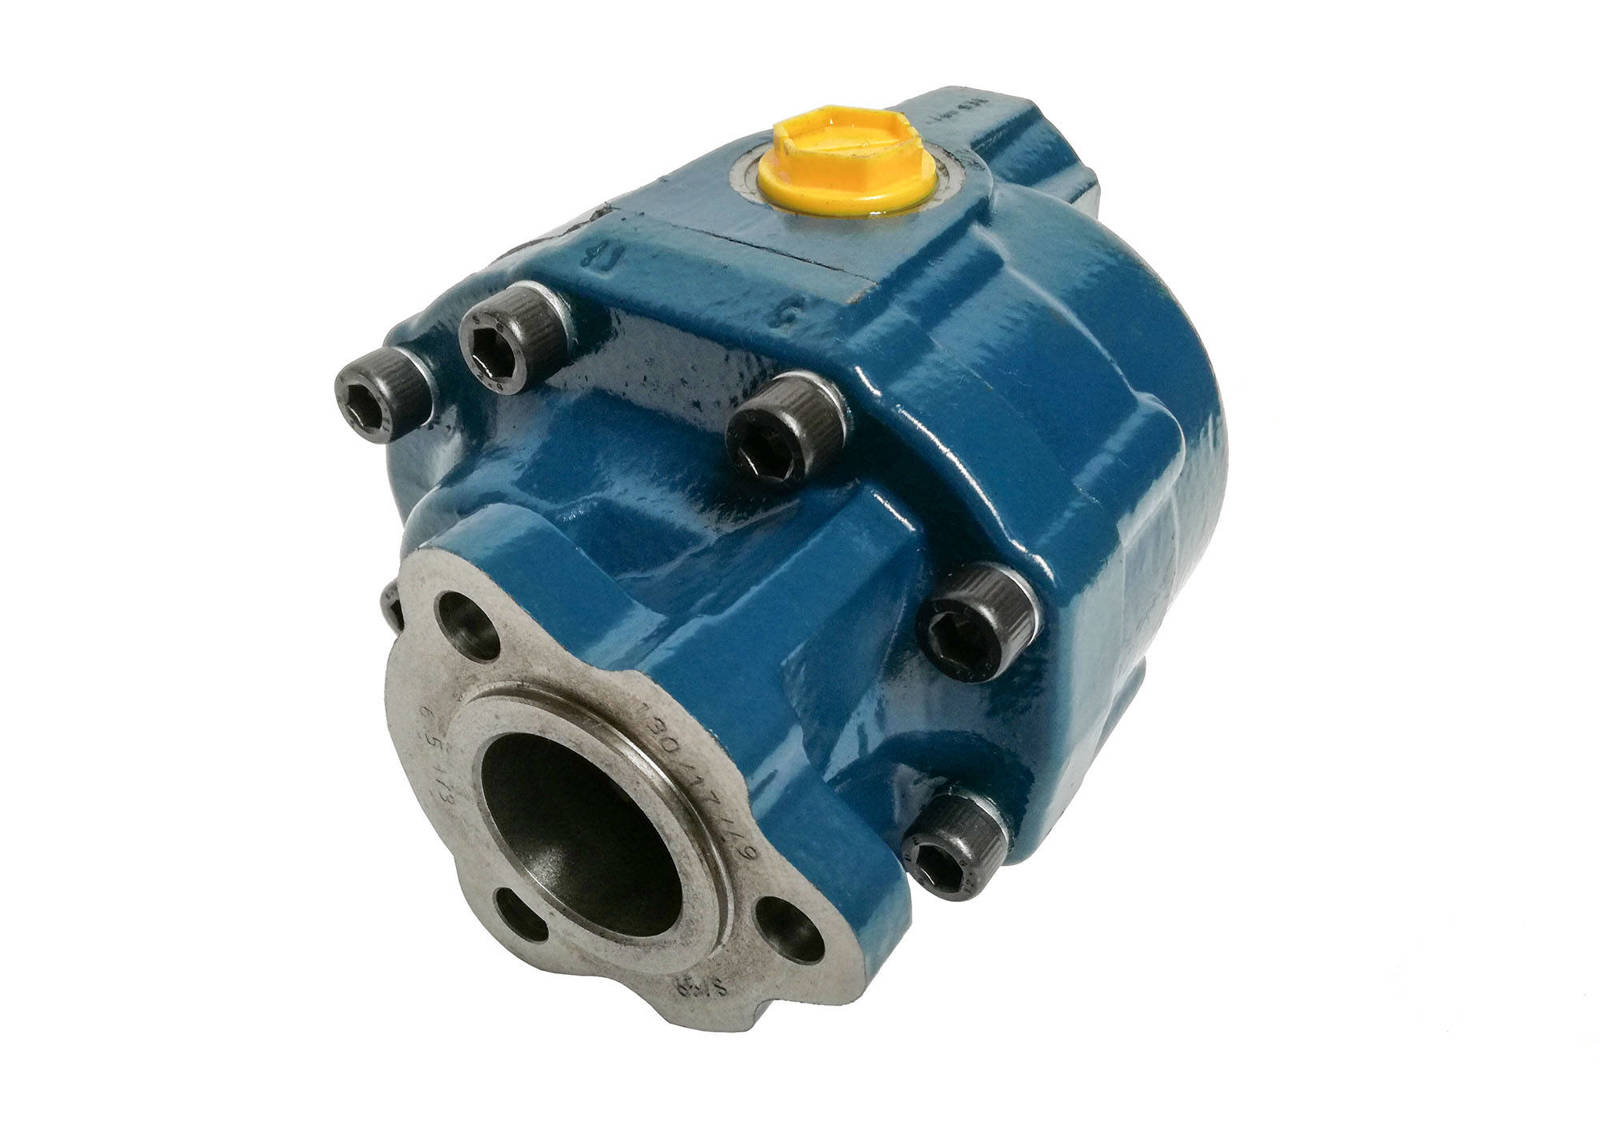 HYDROCAR Gear pump, 200FZ0065D0, FZ0 65, clockwise rotation, UNI